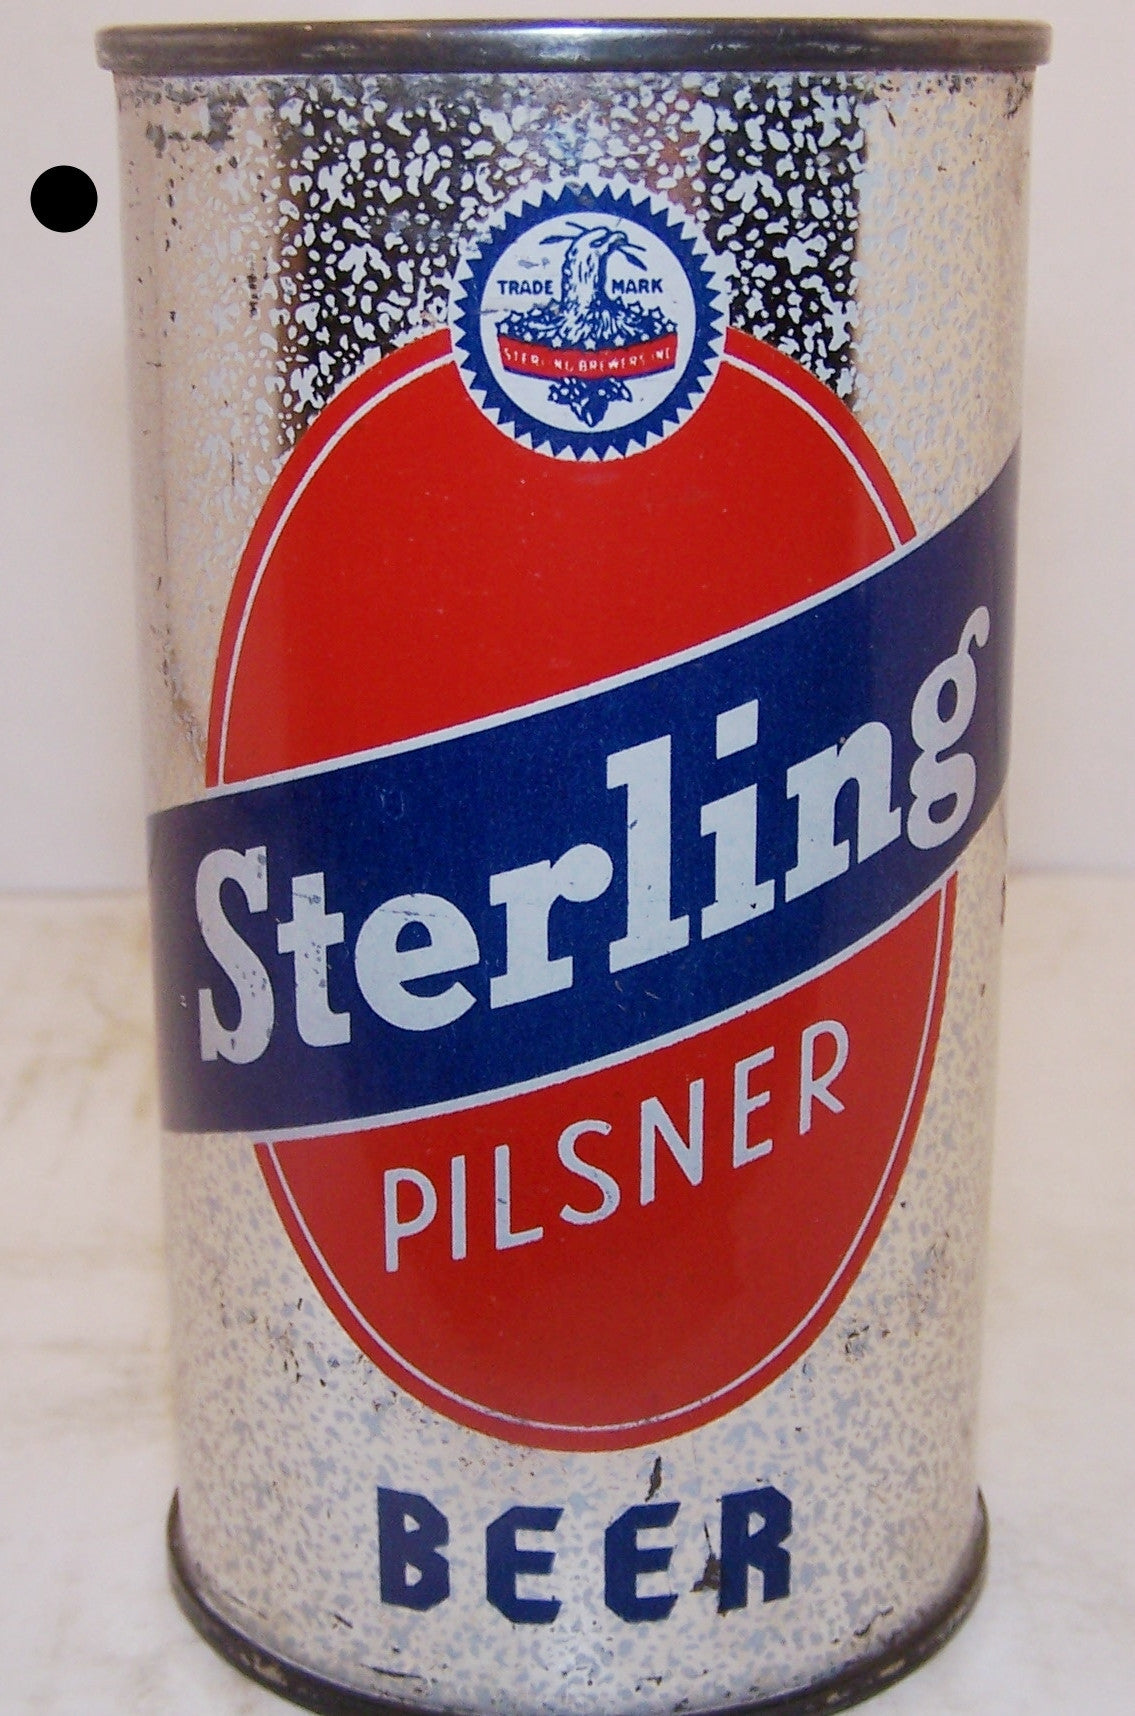 Sterling Pilsner Beer, Lilek page # 776, Grade 1 Sold on 6/15/15